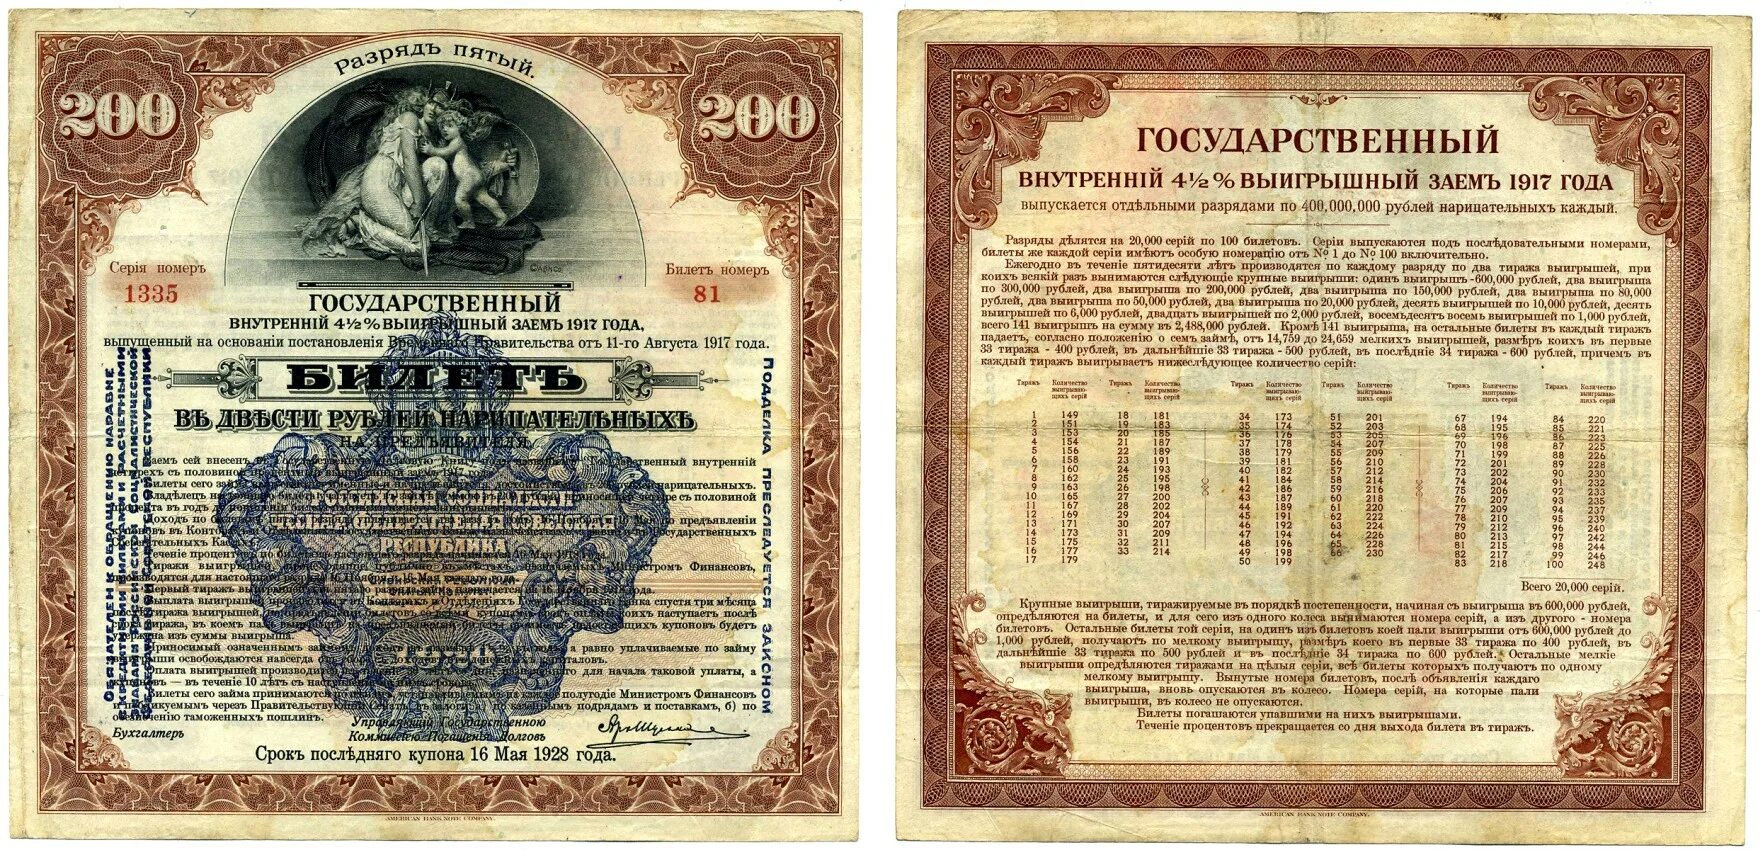 5 рублей тираж. 200 Рублей 1917. Государственный внутренний 11% заем 1928 года. Государственный внутренний 4 1/2 % выигрышный заем. Билет государственного займа это.